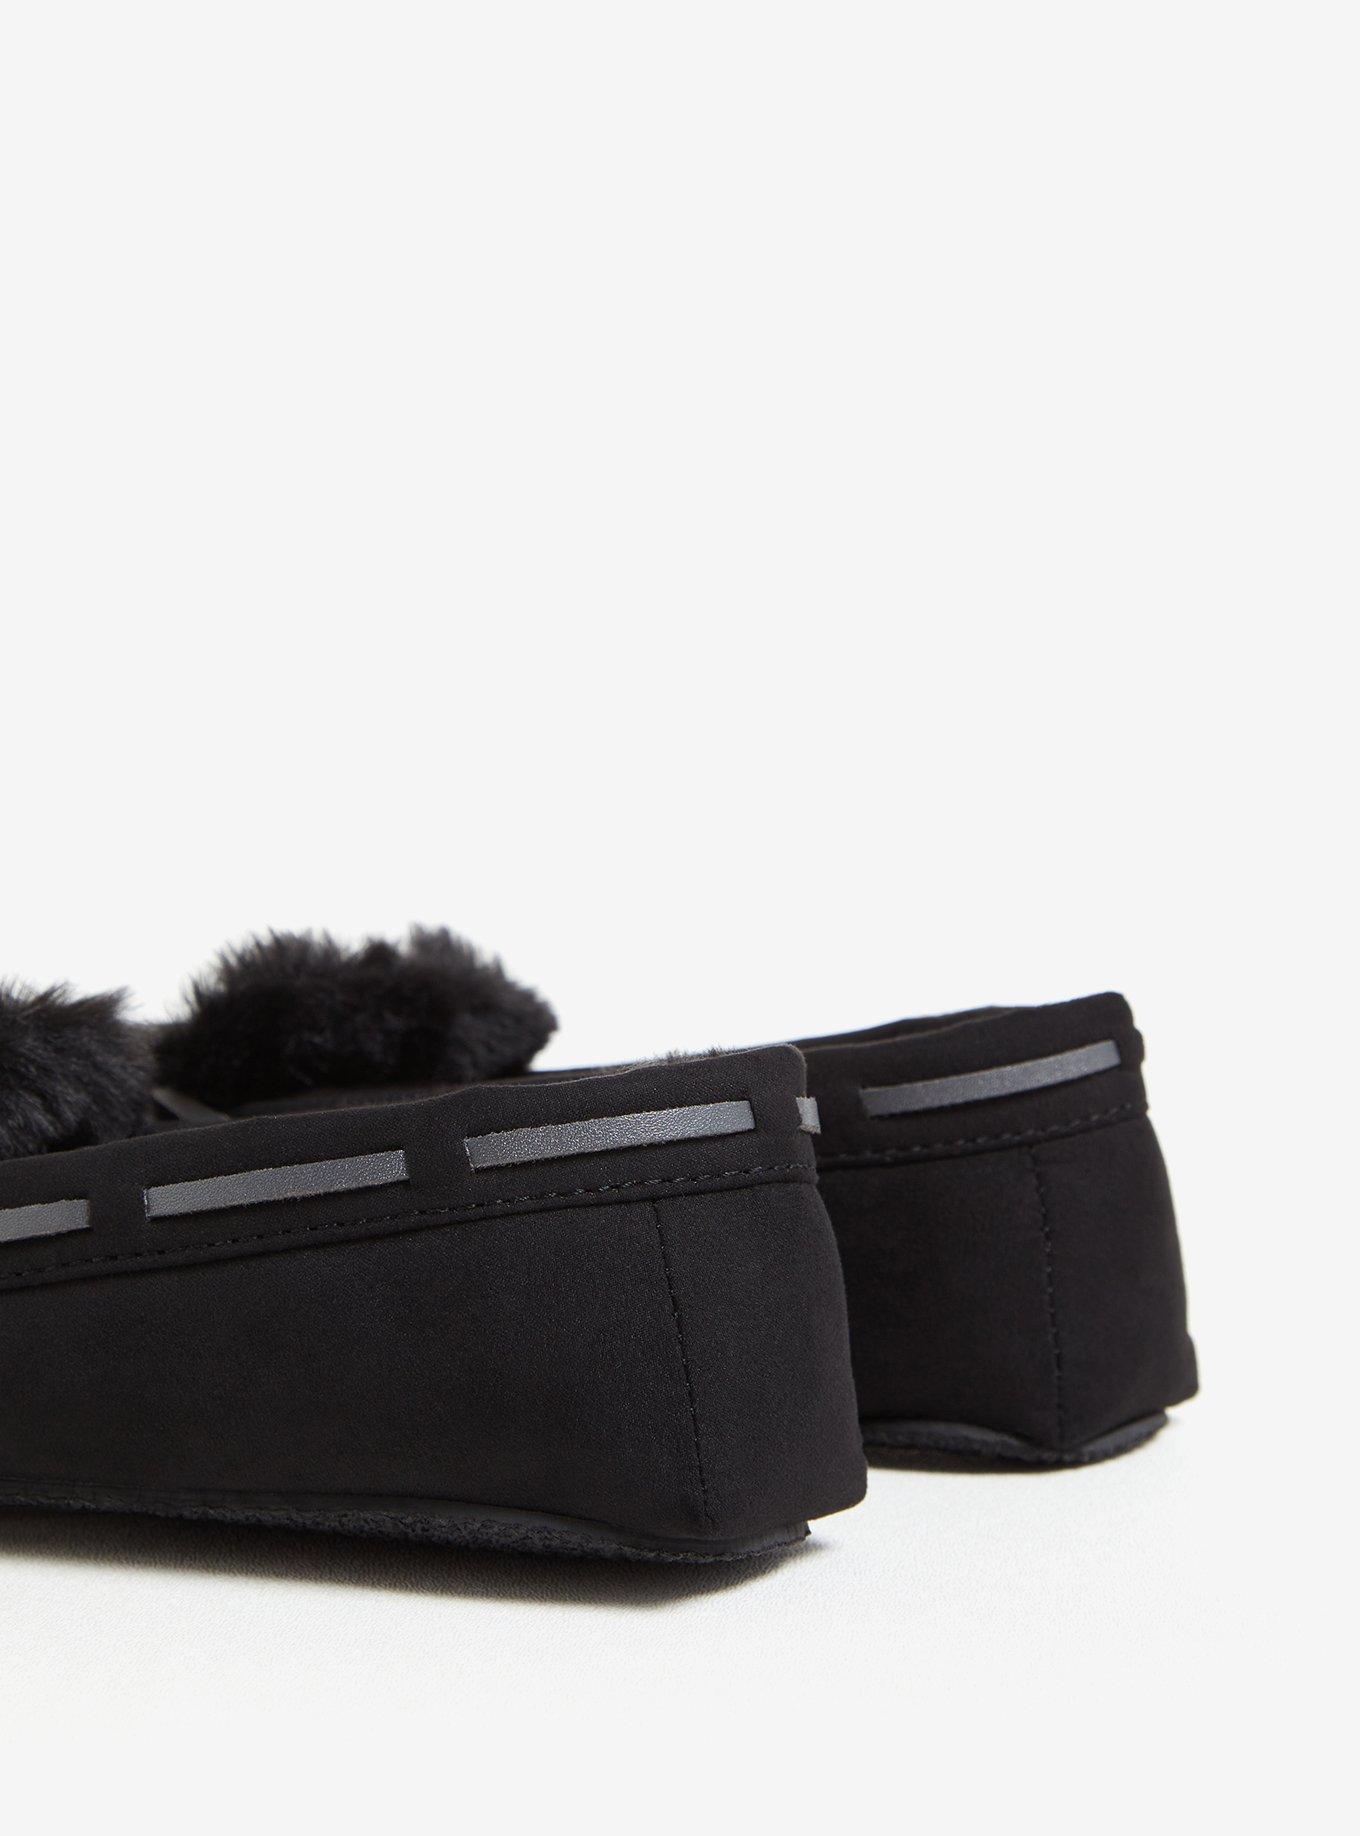 Plus Size - Black Faux Fur Slide (Wide Width) - Torrid